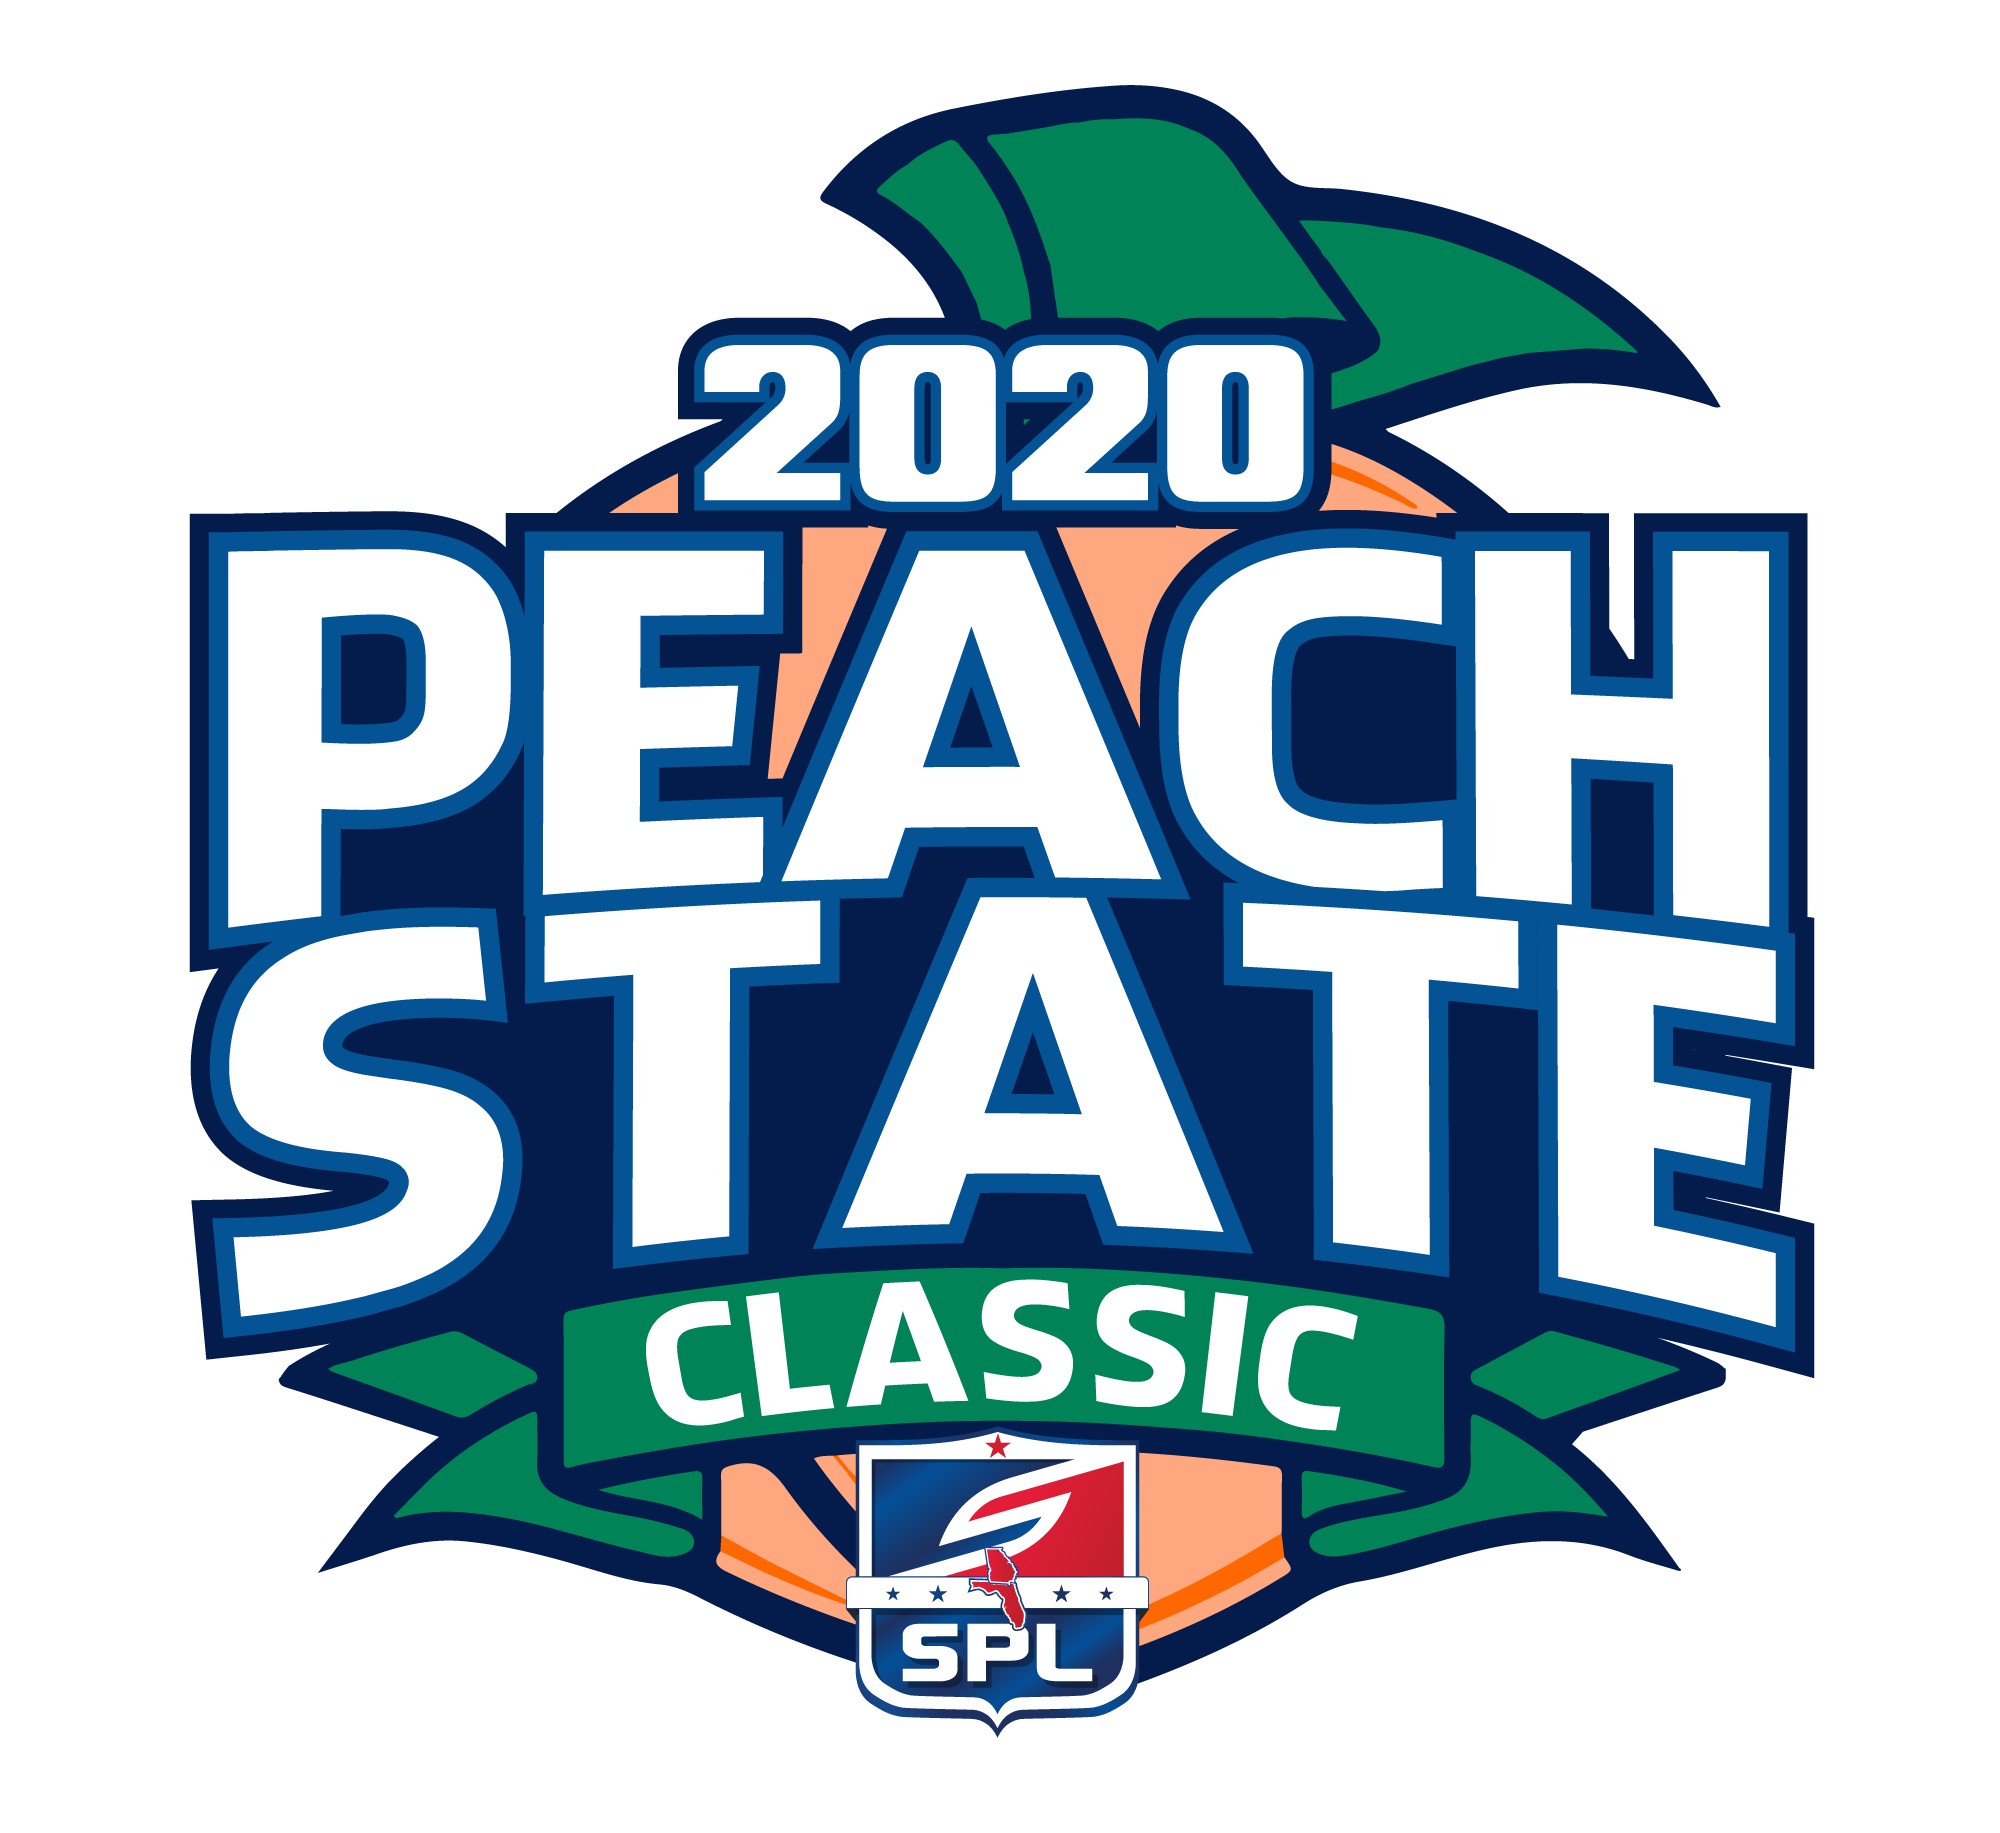 2020 SPL Peach State Classic Logo